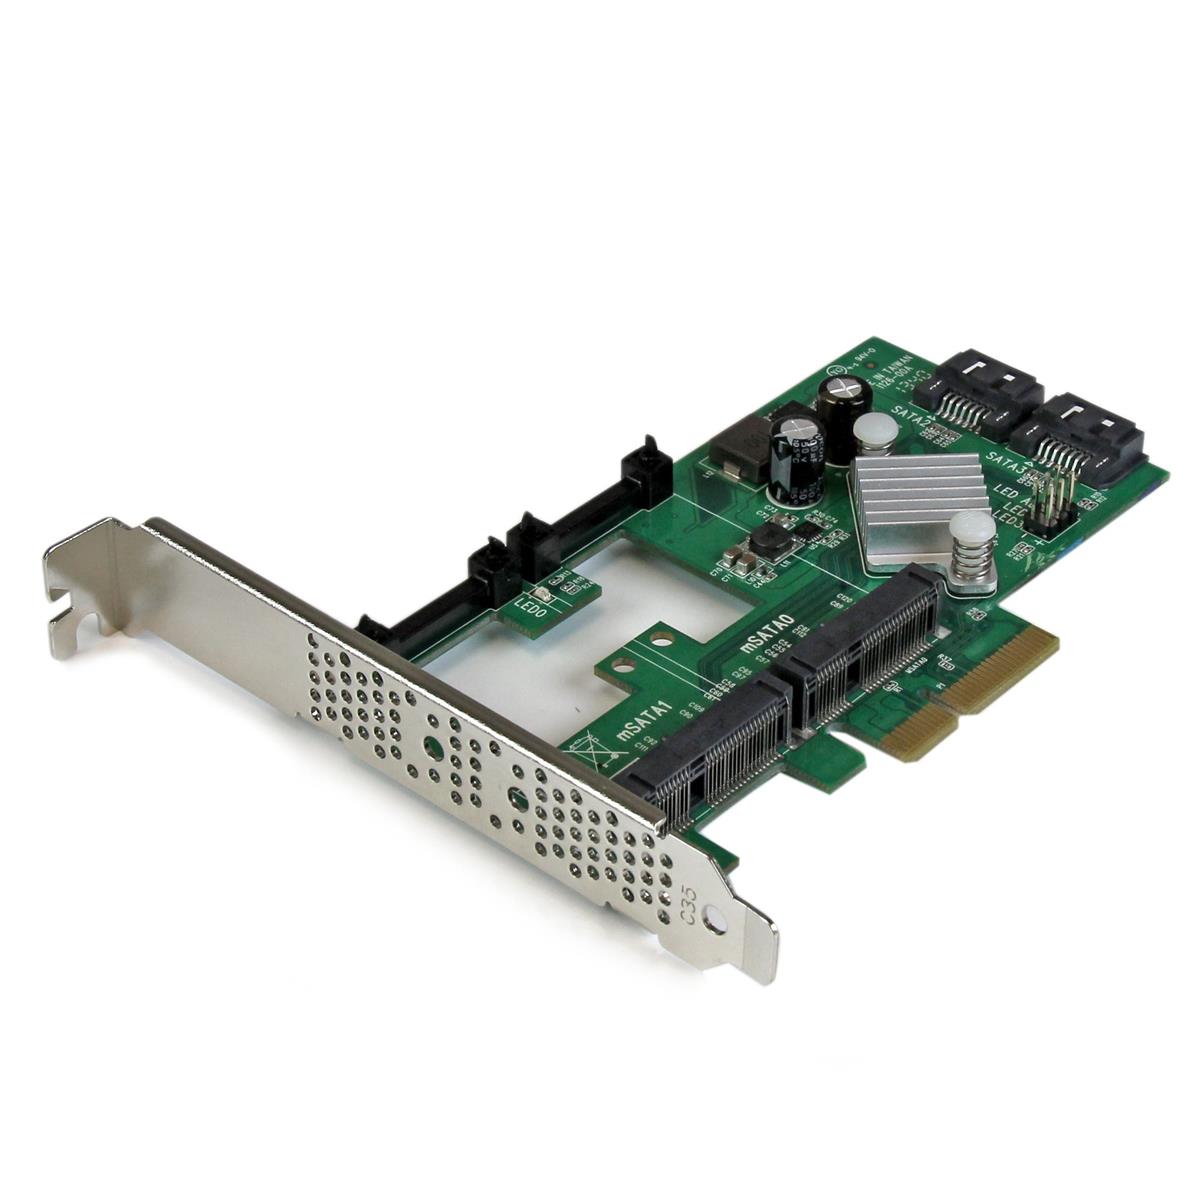 

StarTech 2 Port PCI Express 2.0 SATA III 6Gbps RAID Controller Card